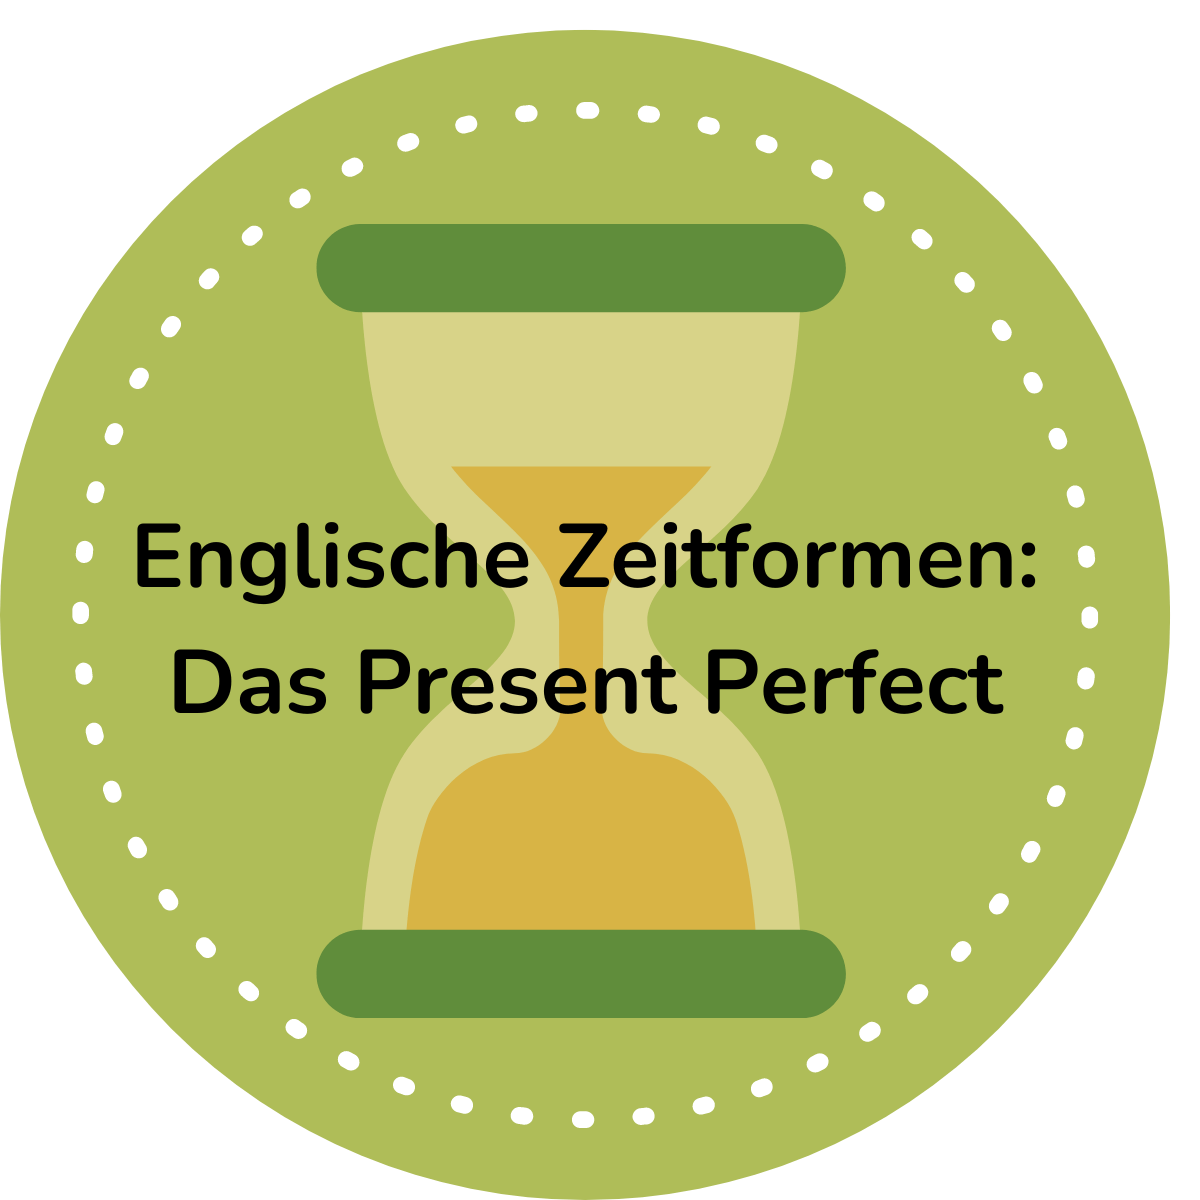 Englische Zeitformen: Das Present Perfect